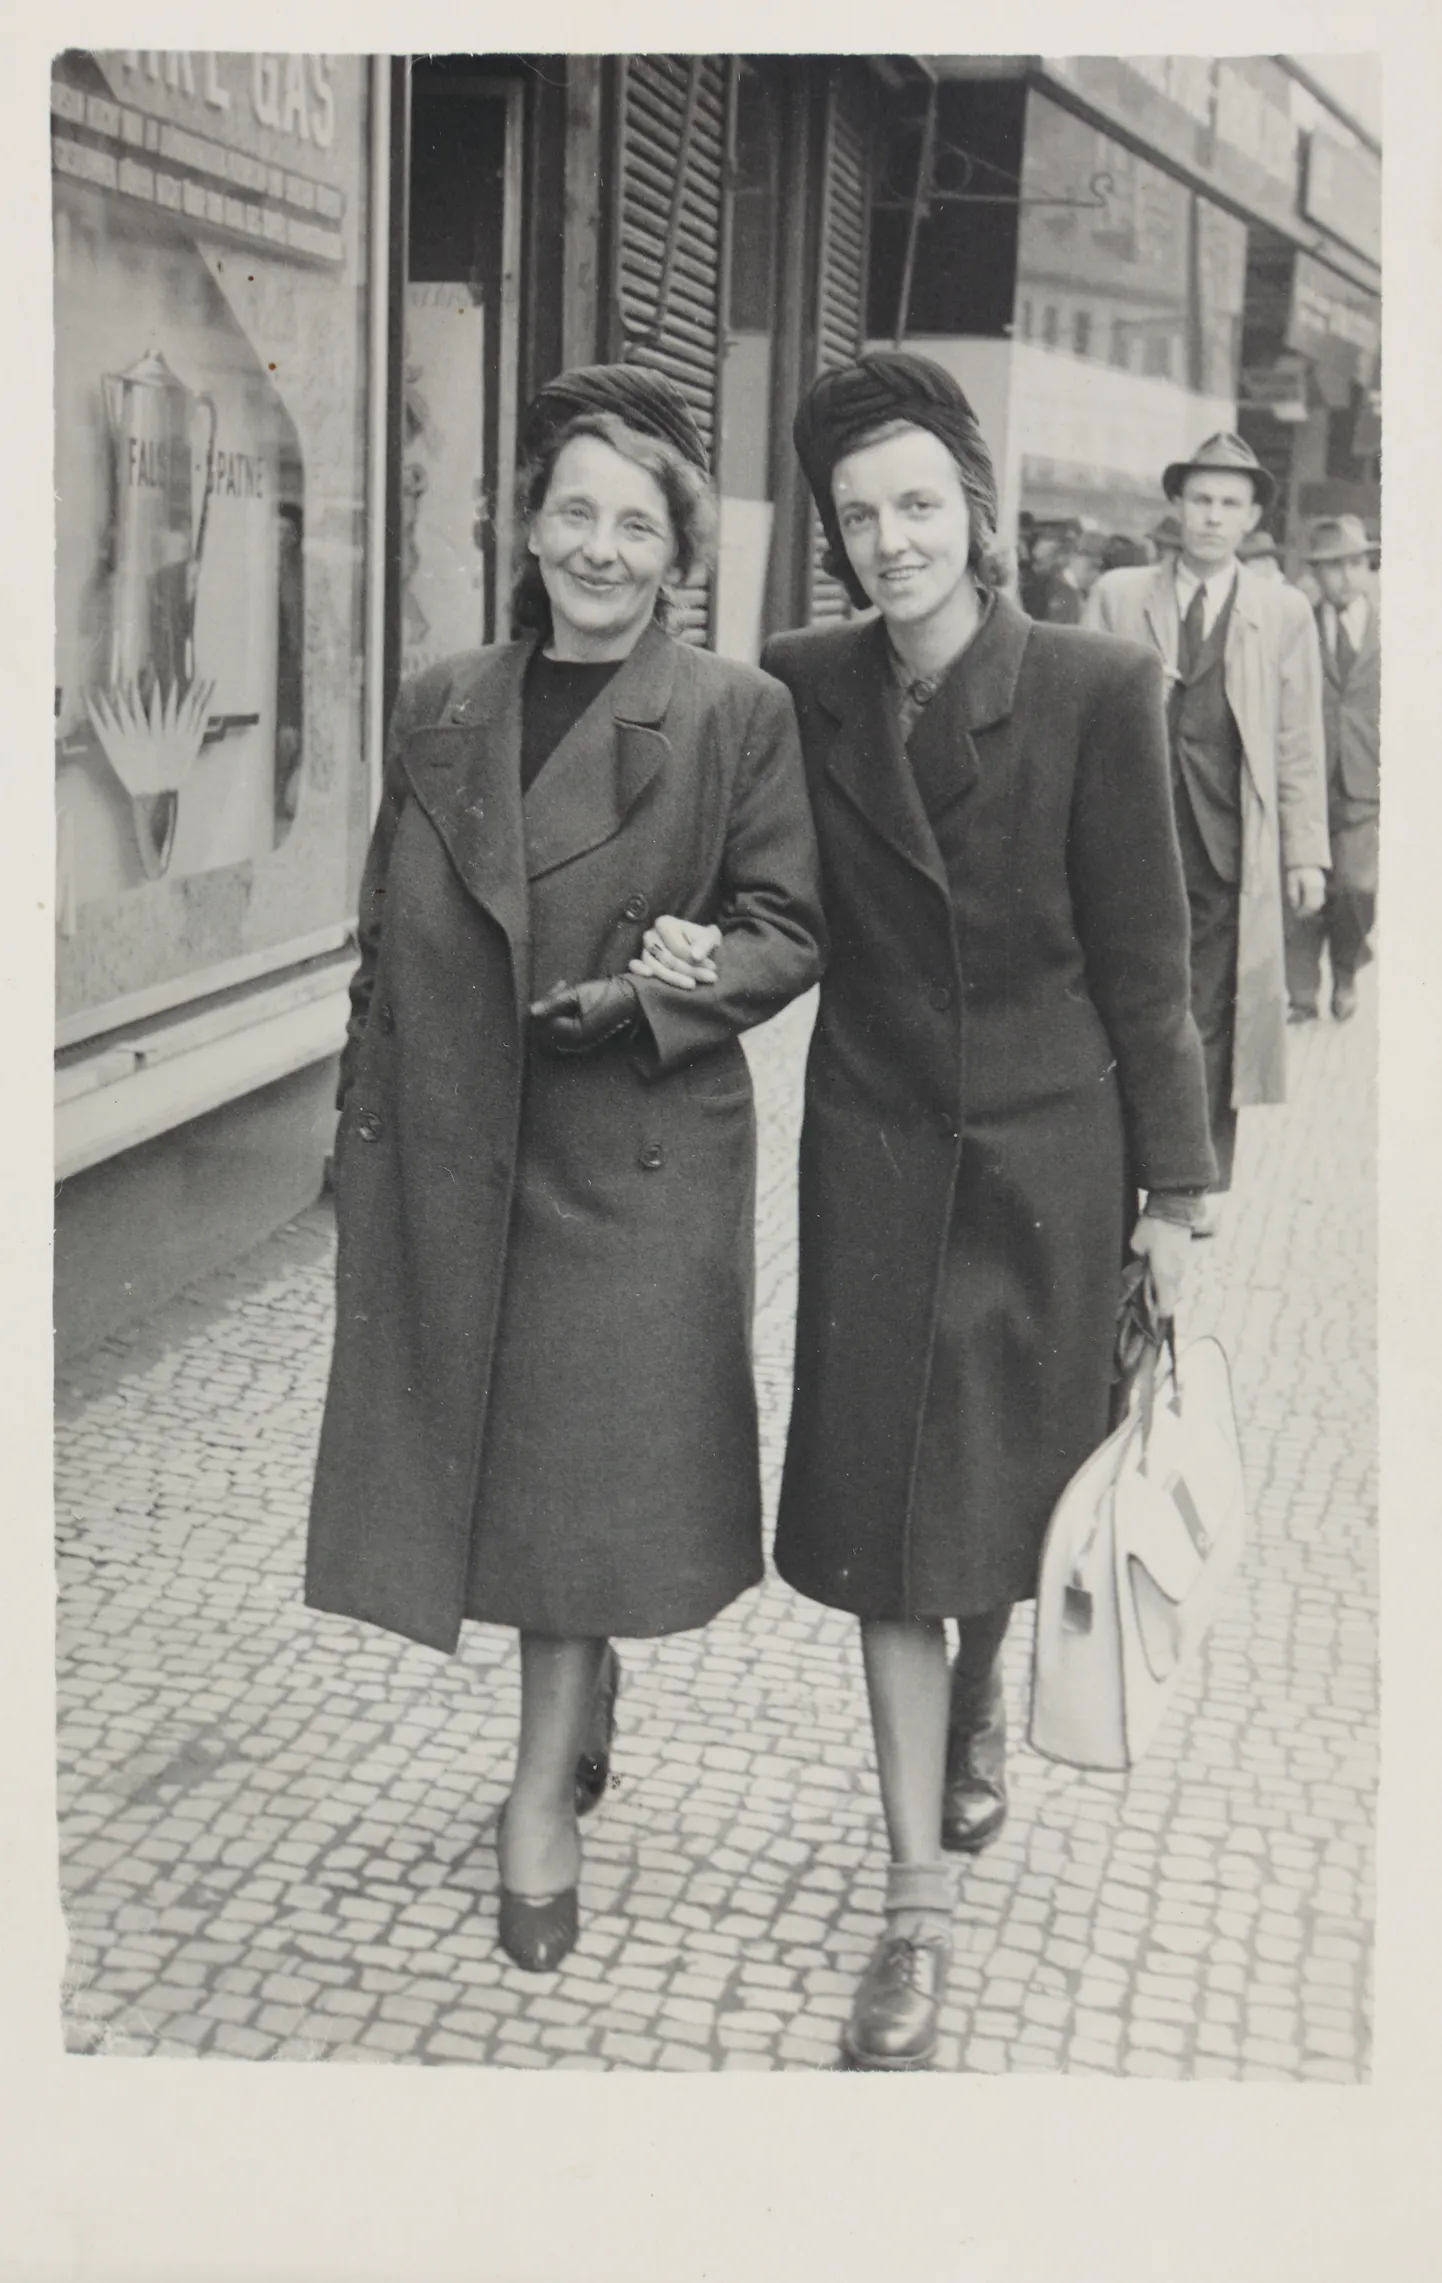 Pilt on illustreeriv. Naised 1940ndatel.